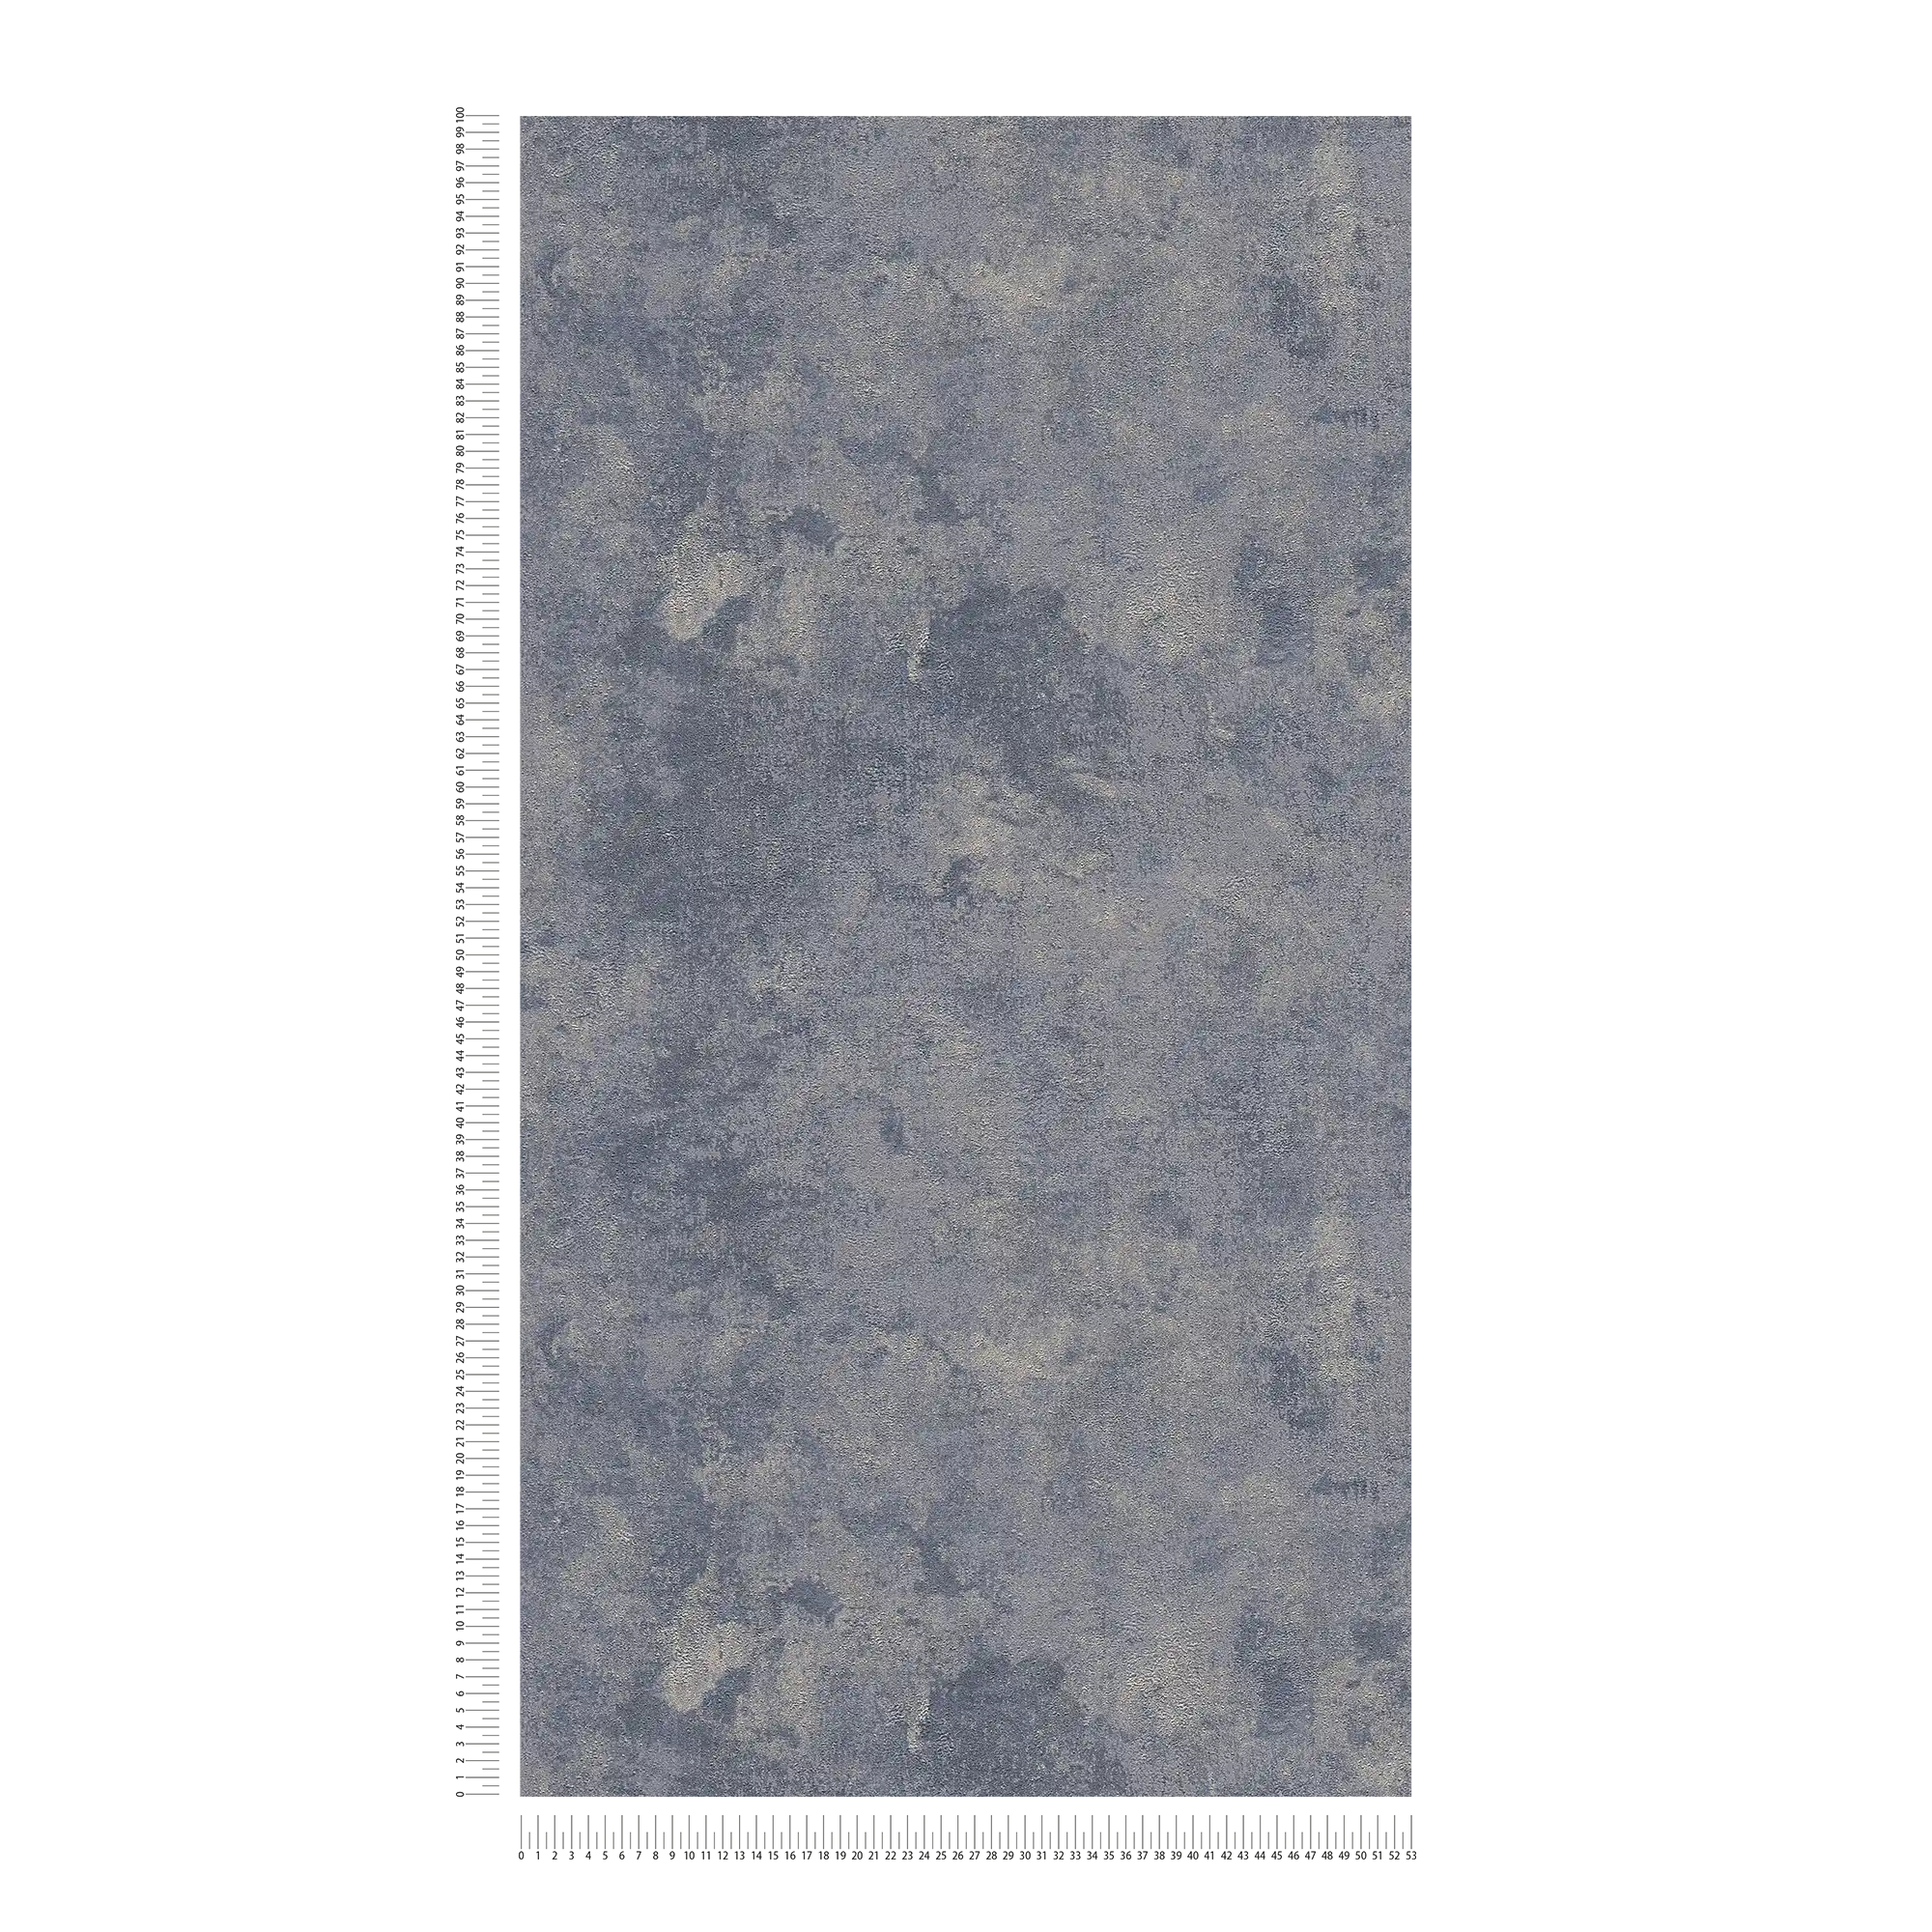             papel pintado estructura rugosa y efecto brillo - azul, plata, gris
        